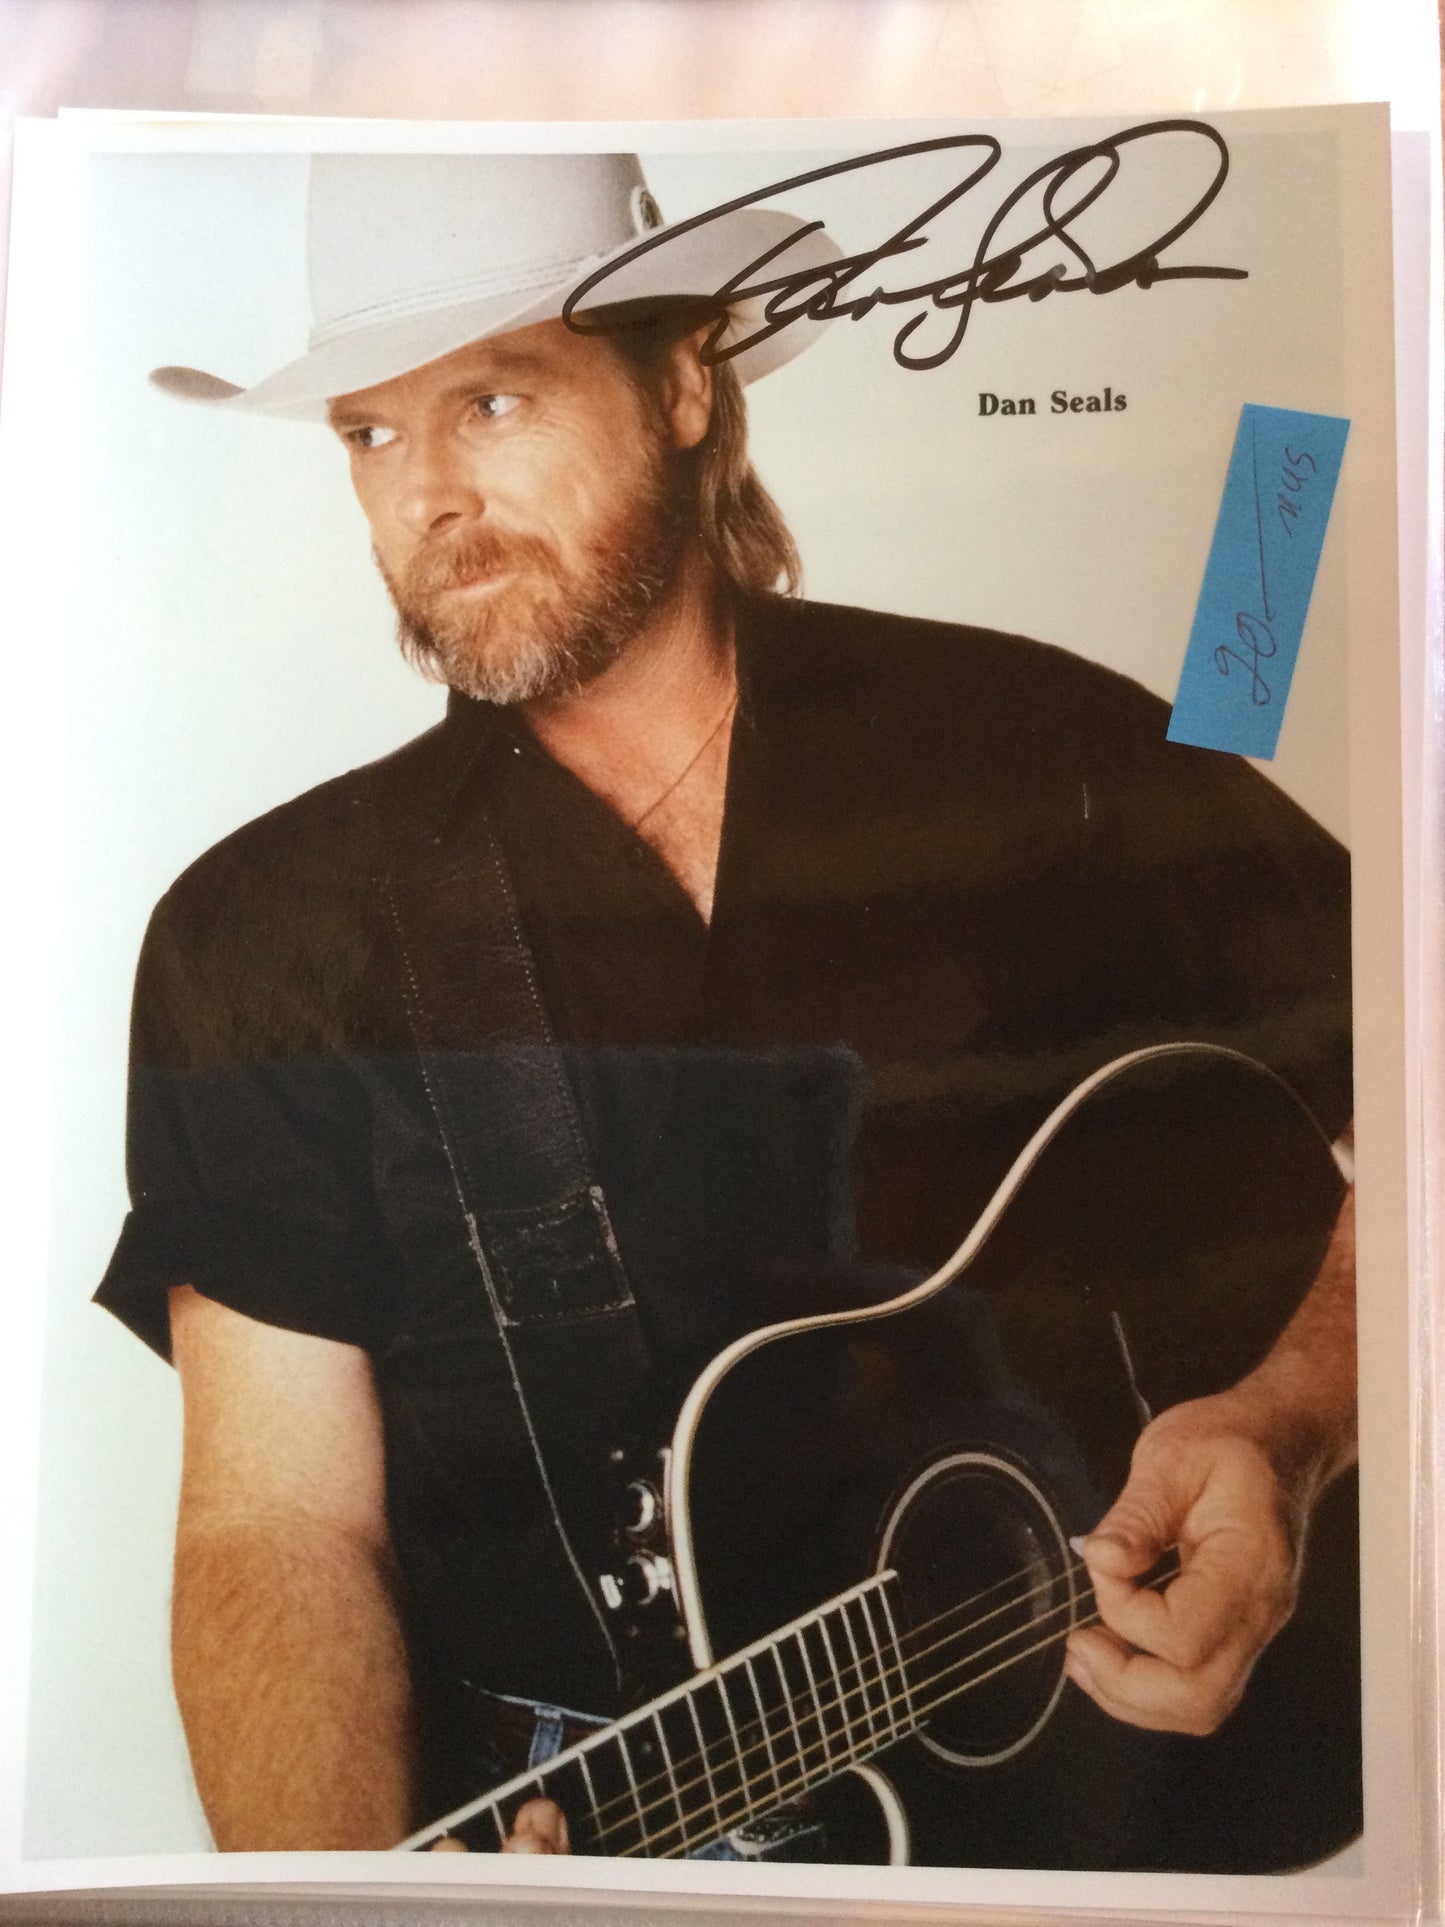 DAN SEALS, country singer, autograph